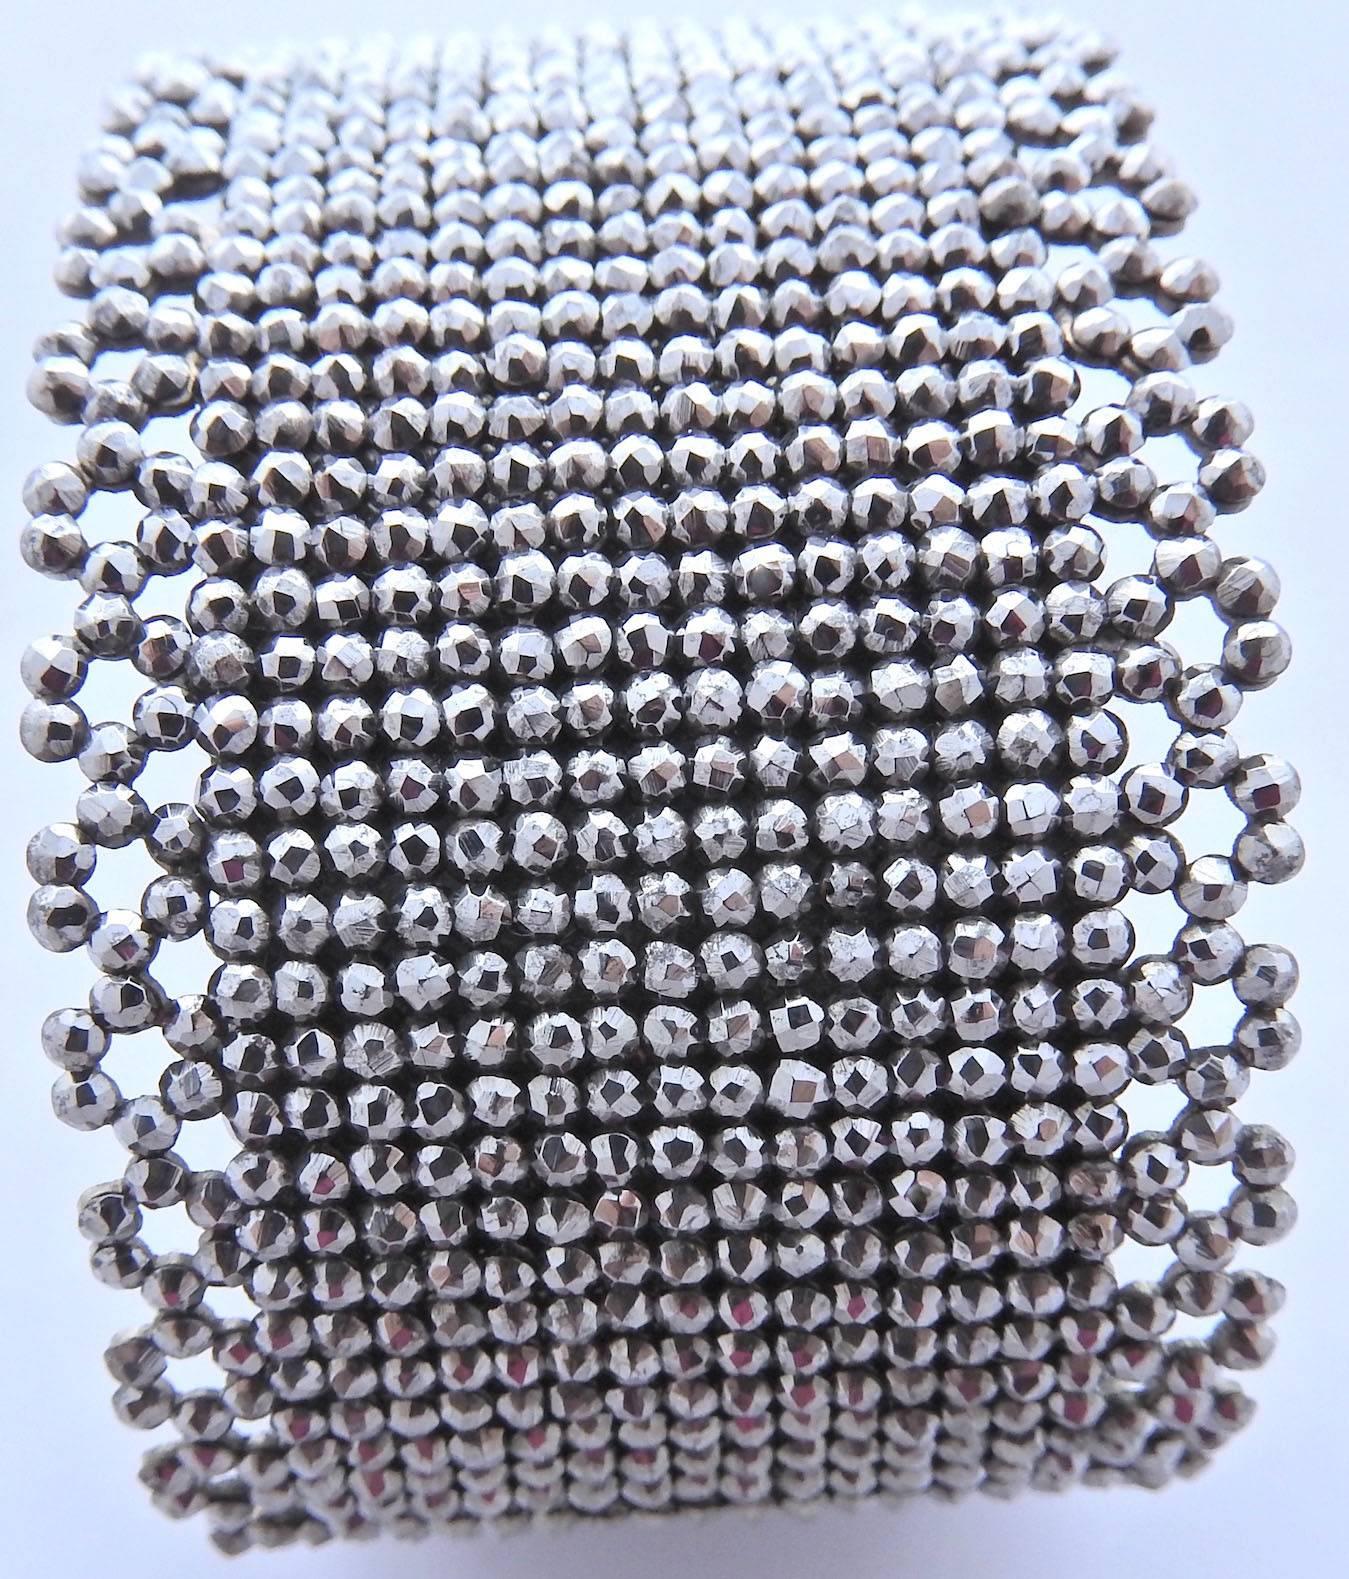 Das kühne viktorianische Manschettenarmband aus geschliffenem Stahl ist ein ungewöhnliches und erstaunliches Beispiel für den beliebten geschliffenen Stahlschmuck der viktorianischen Ära. Geschliffener Stahl wurde als Ersatz für Diamanten